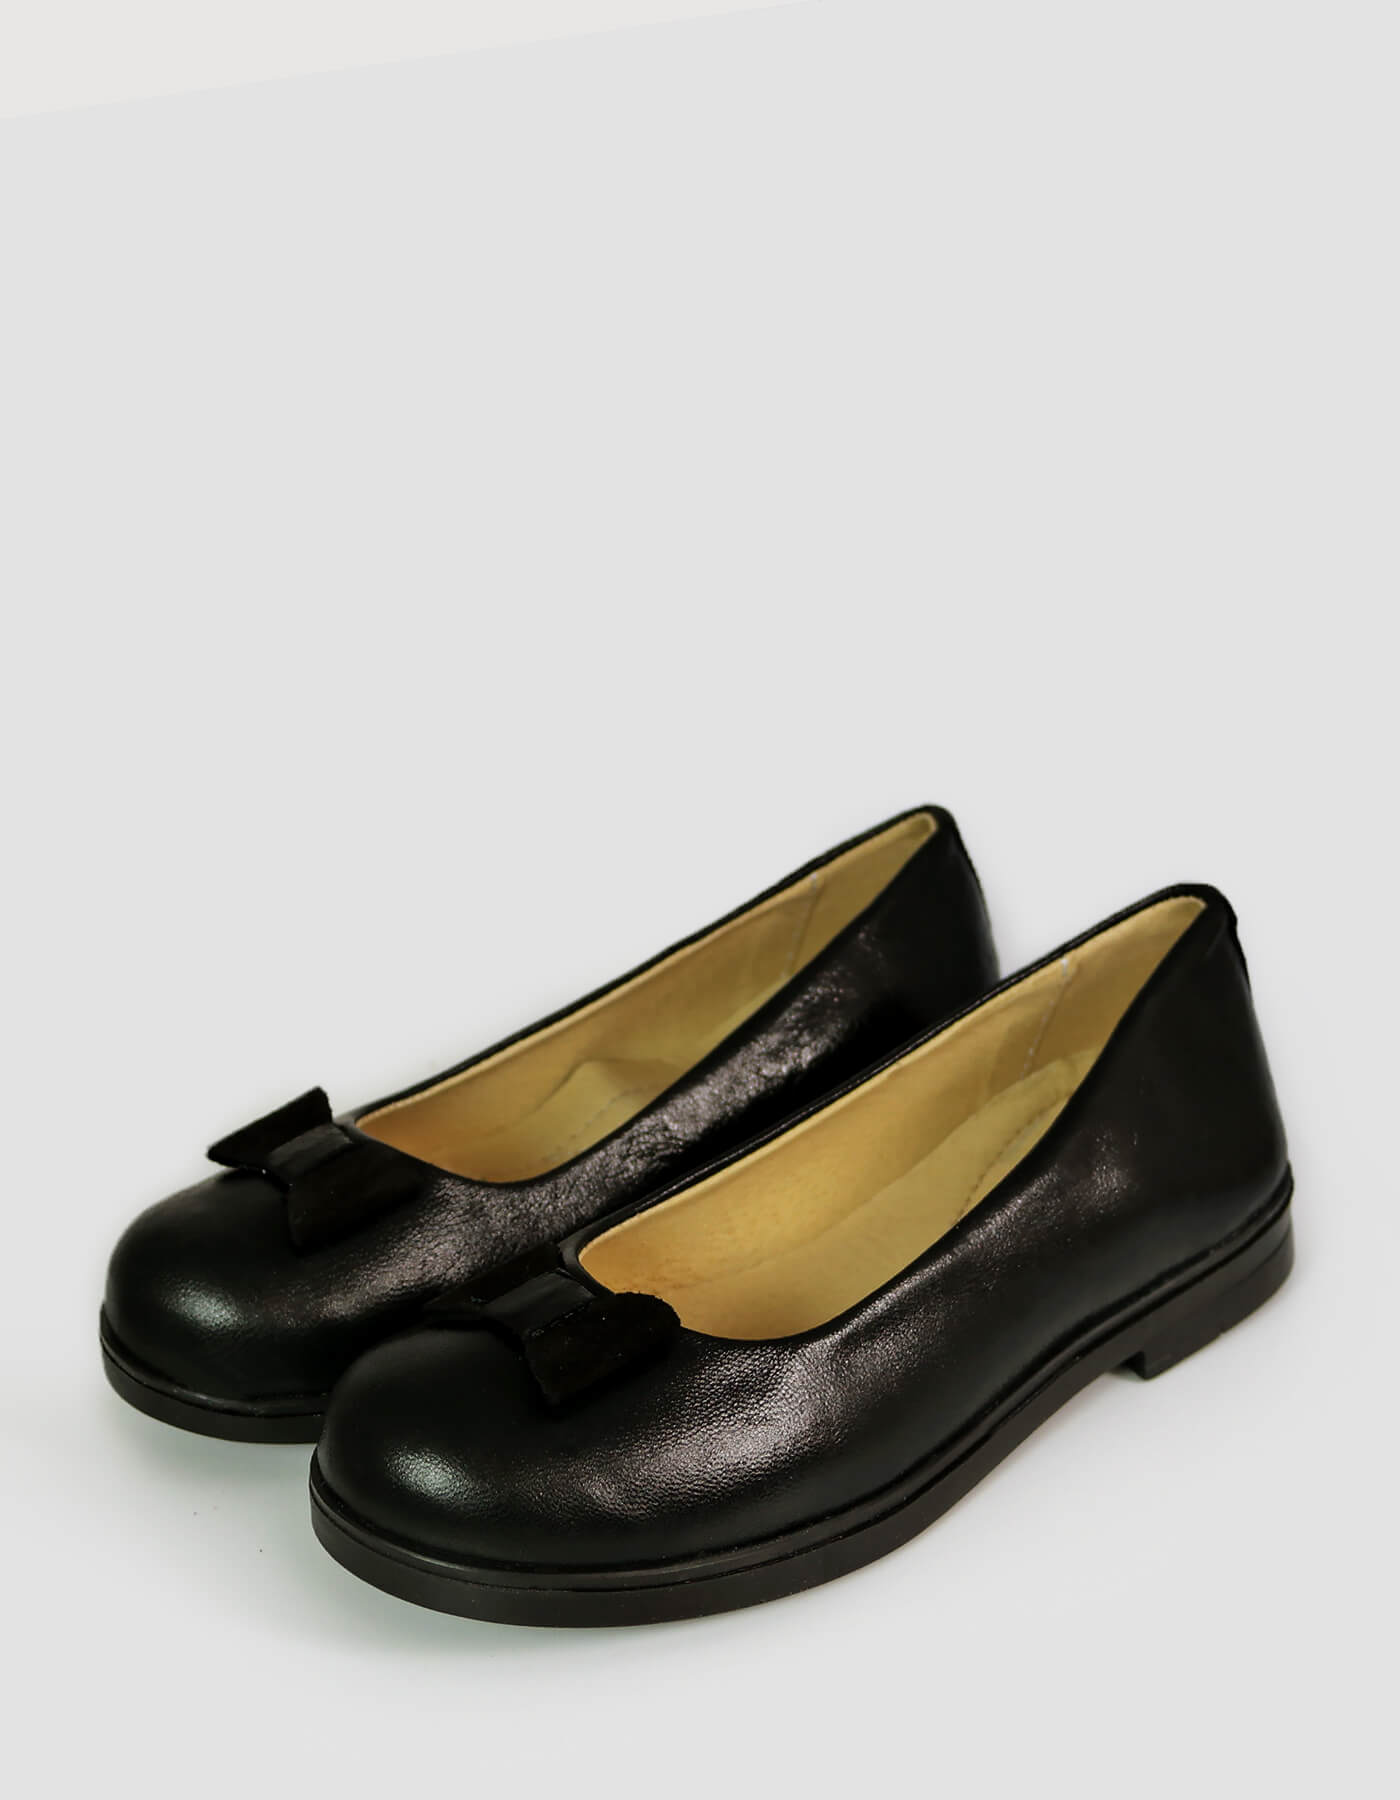 Pantofi fete pentru scoala din piele naturala negru/bordo